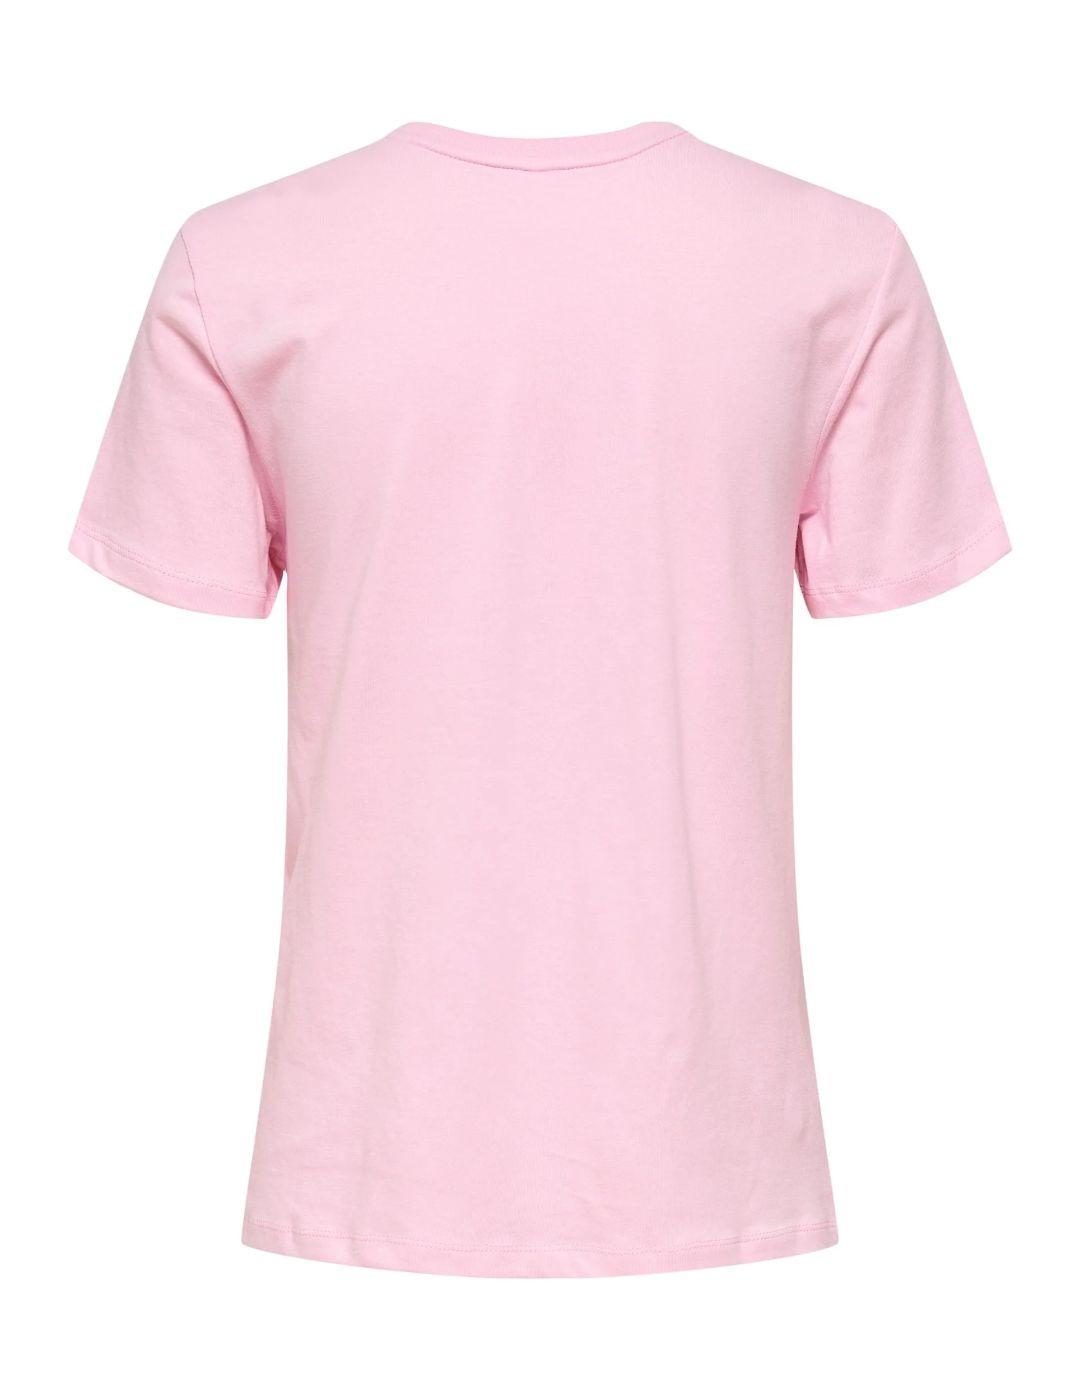 Camiseta Only café rosa para mujer-b